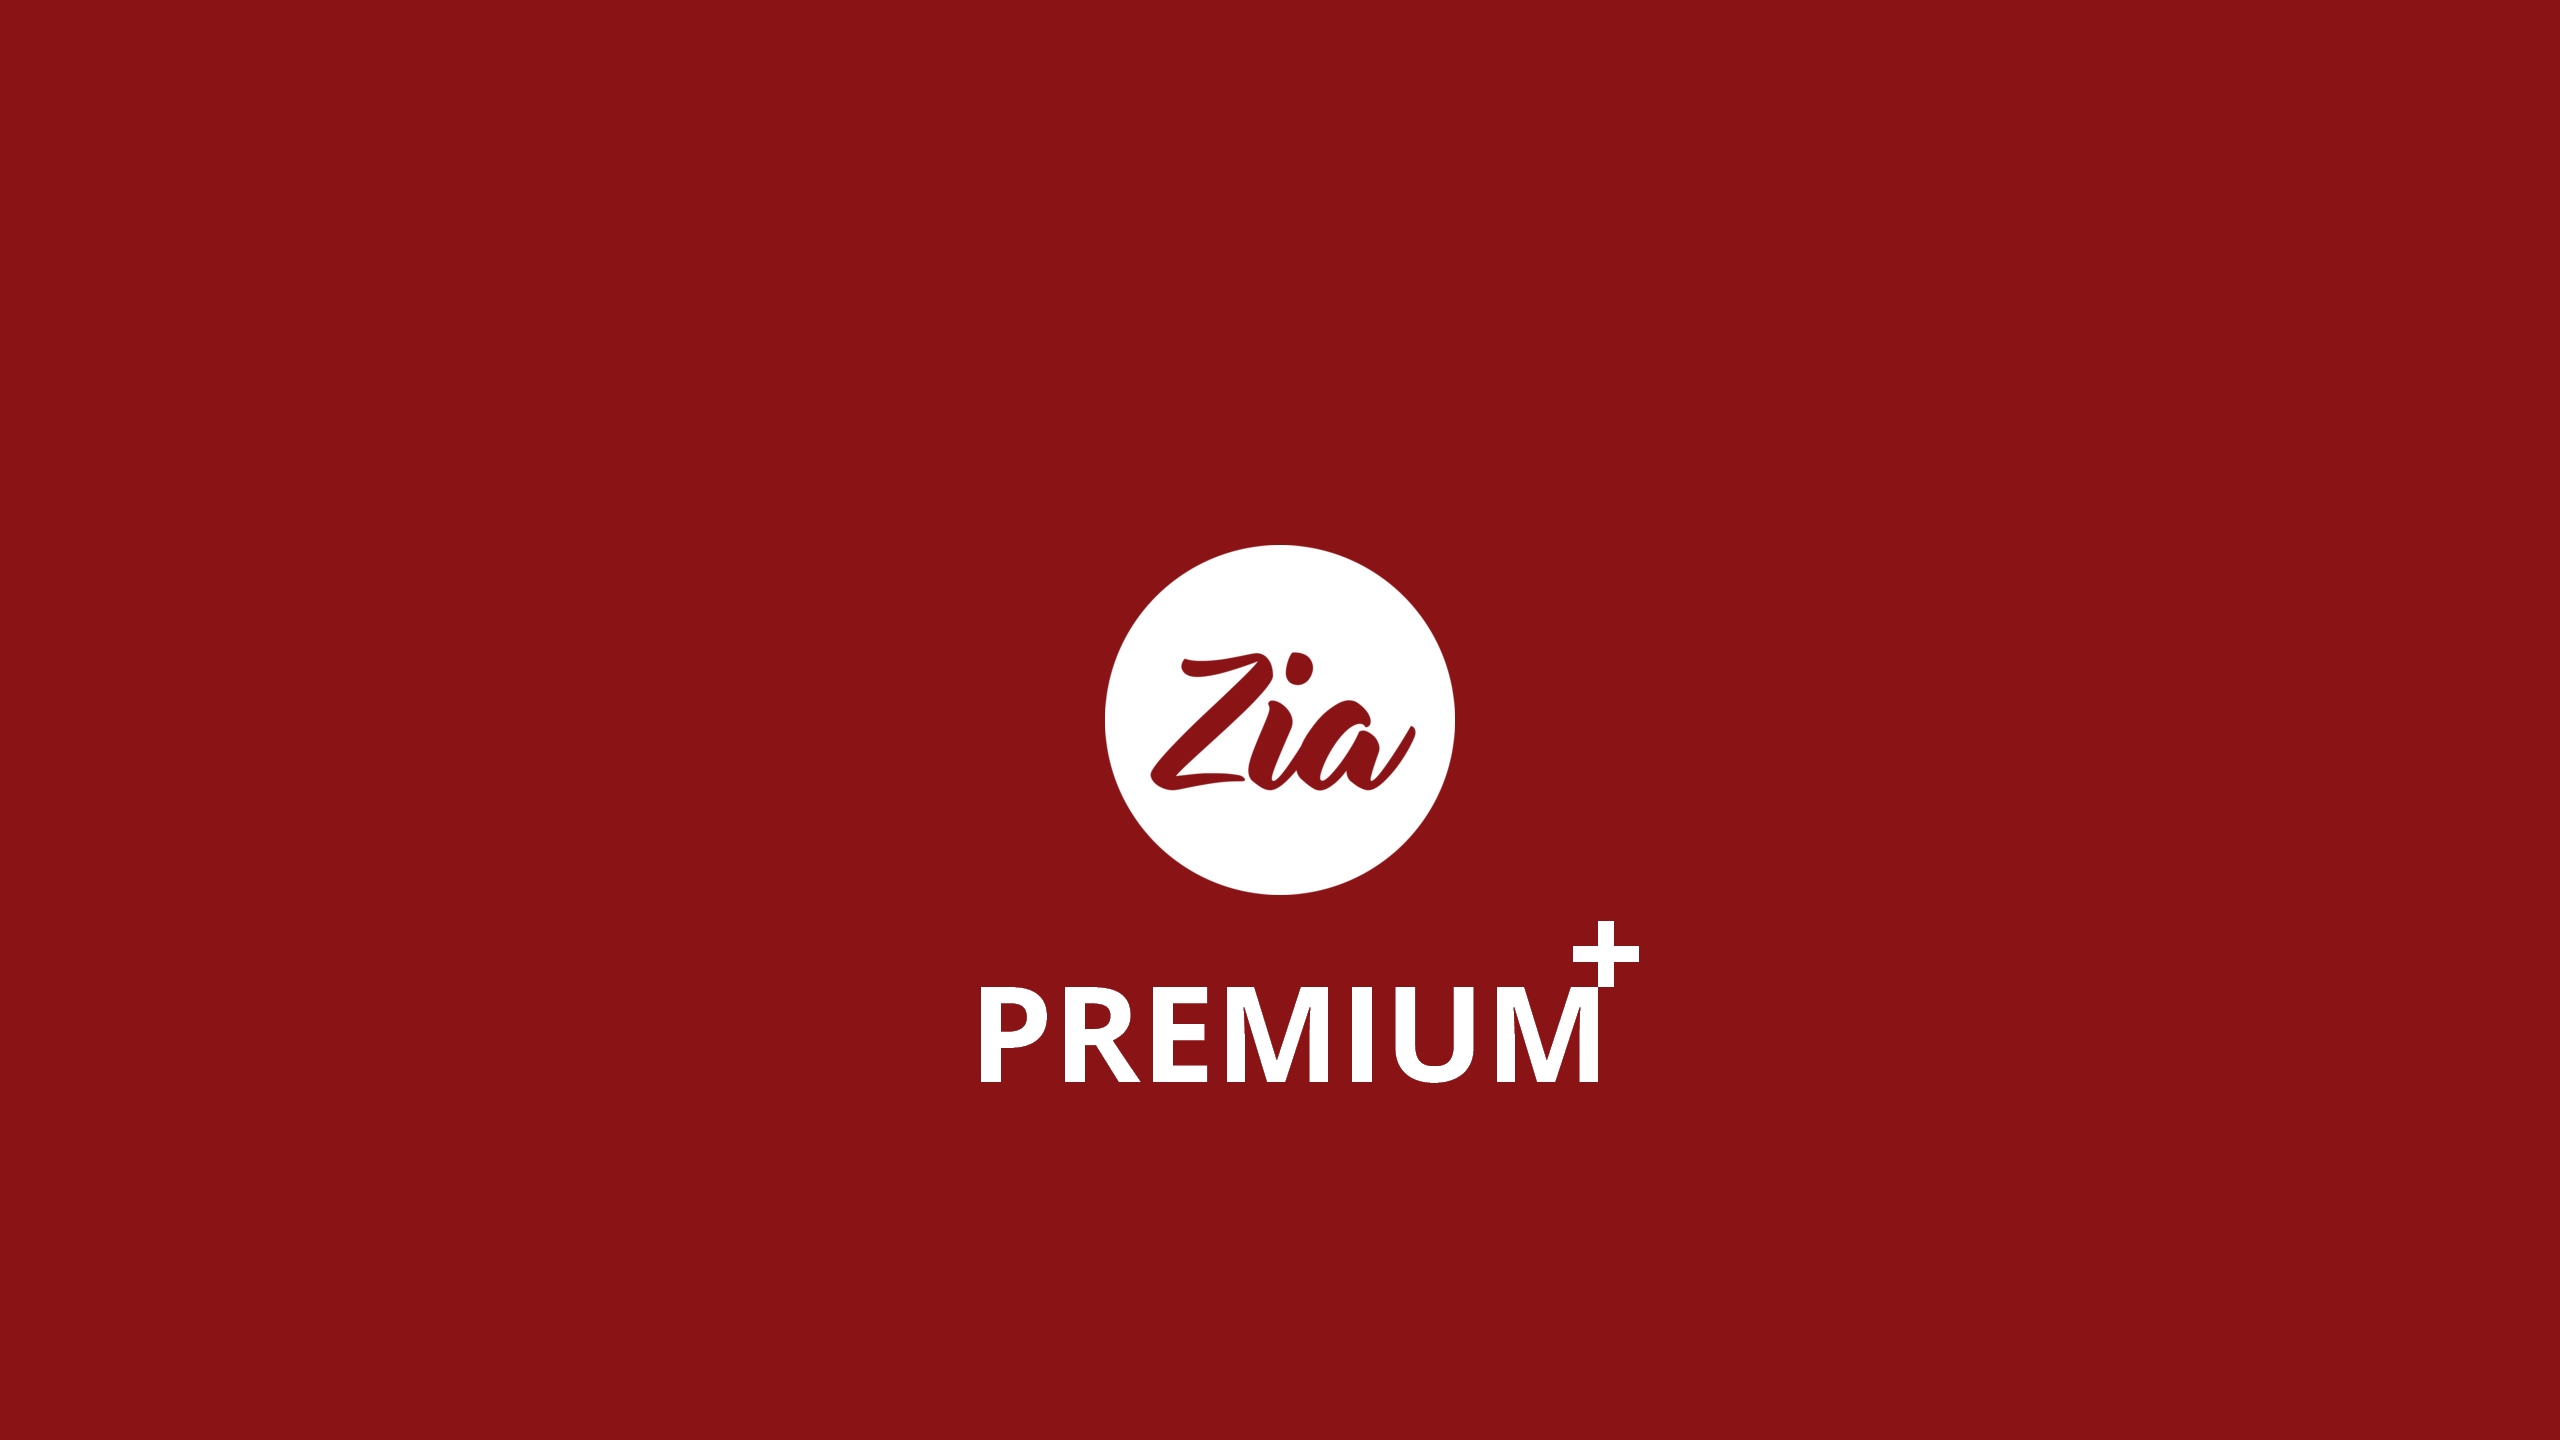 ⠃ Zia Premium +